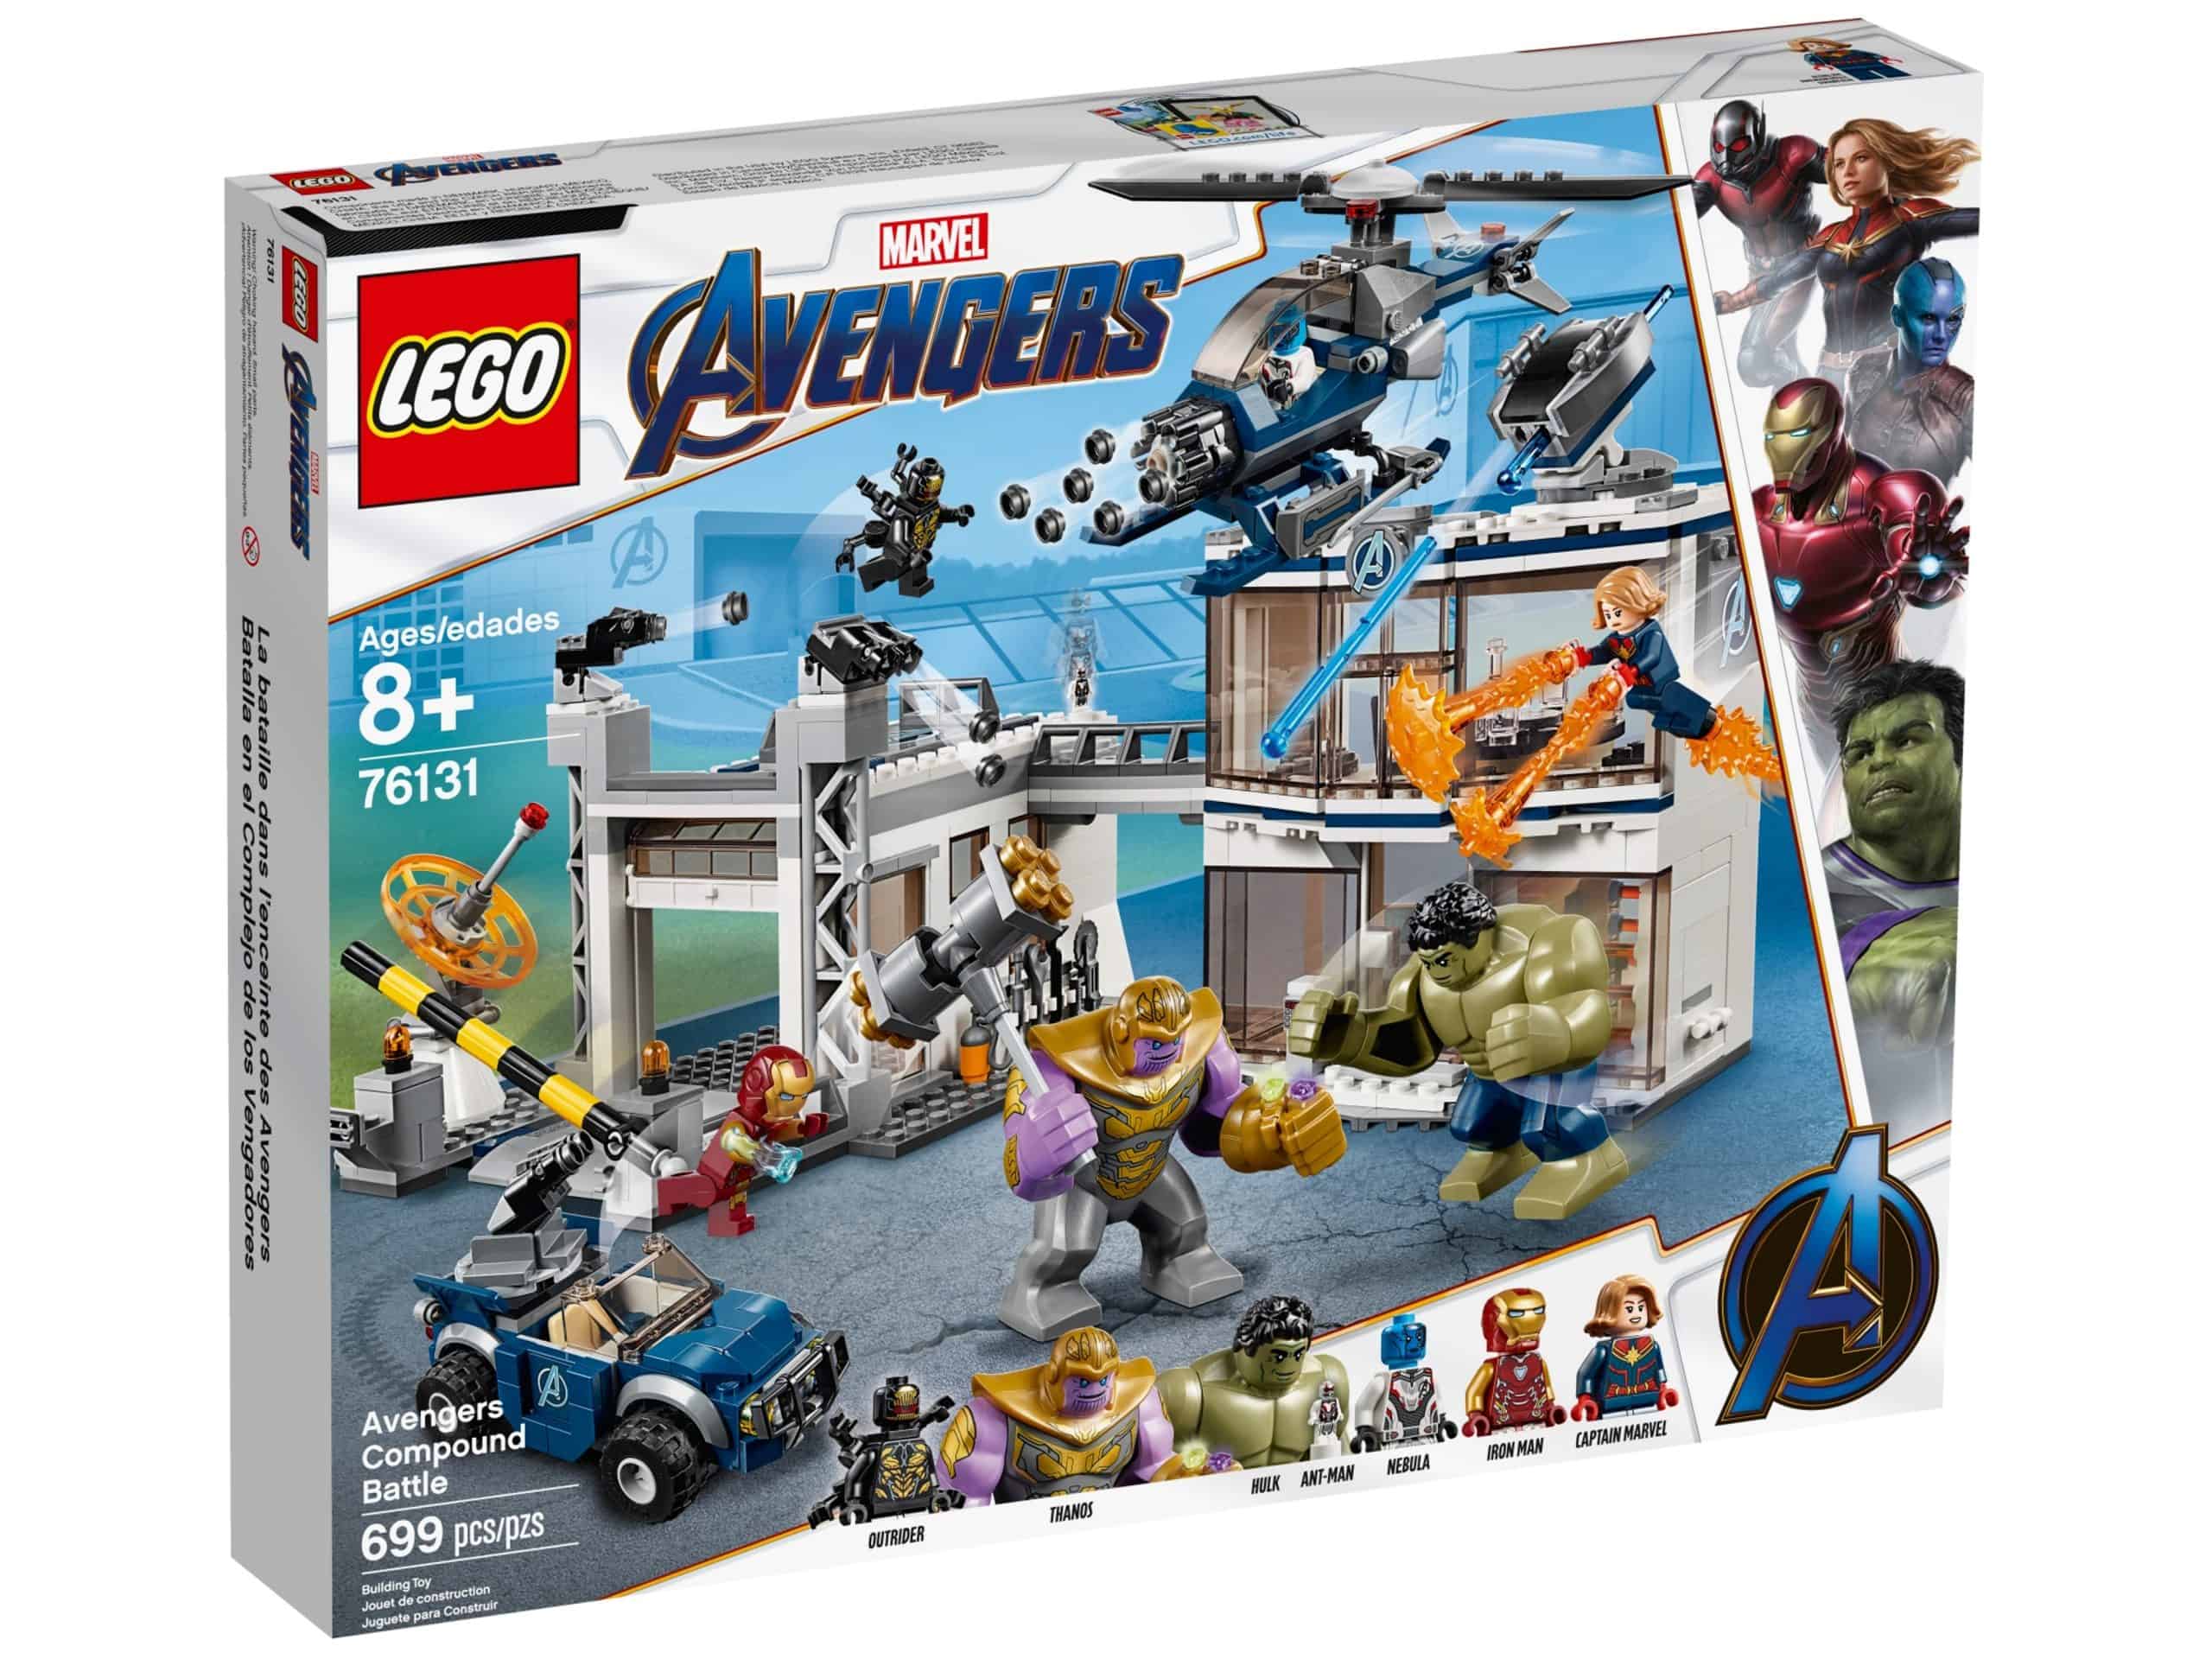 matchmaker strå fossil LEGO 76131 Kampen om Avengers-basen – 899 kr